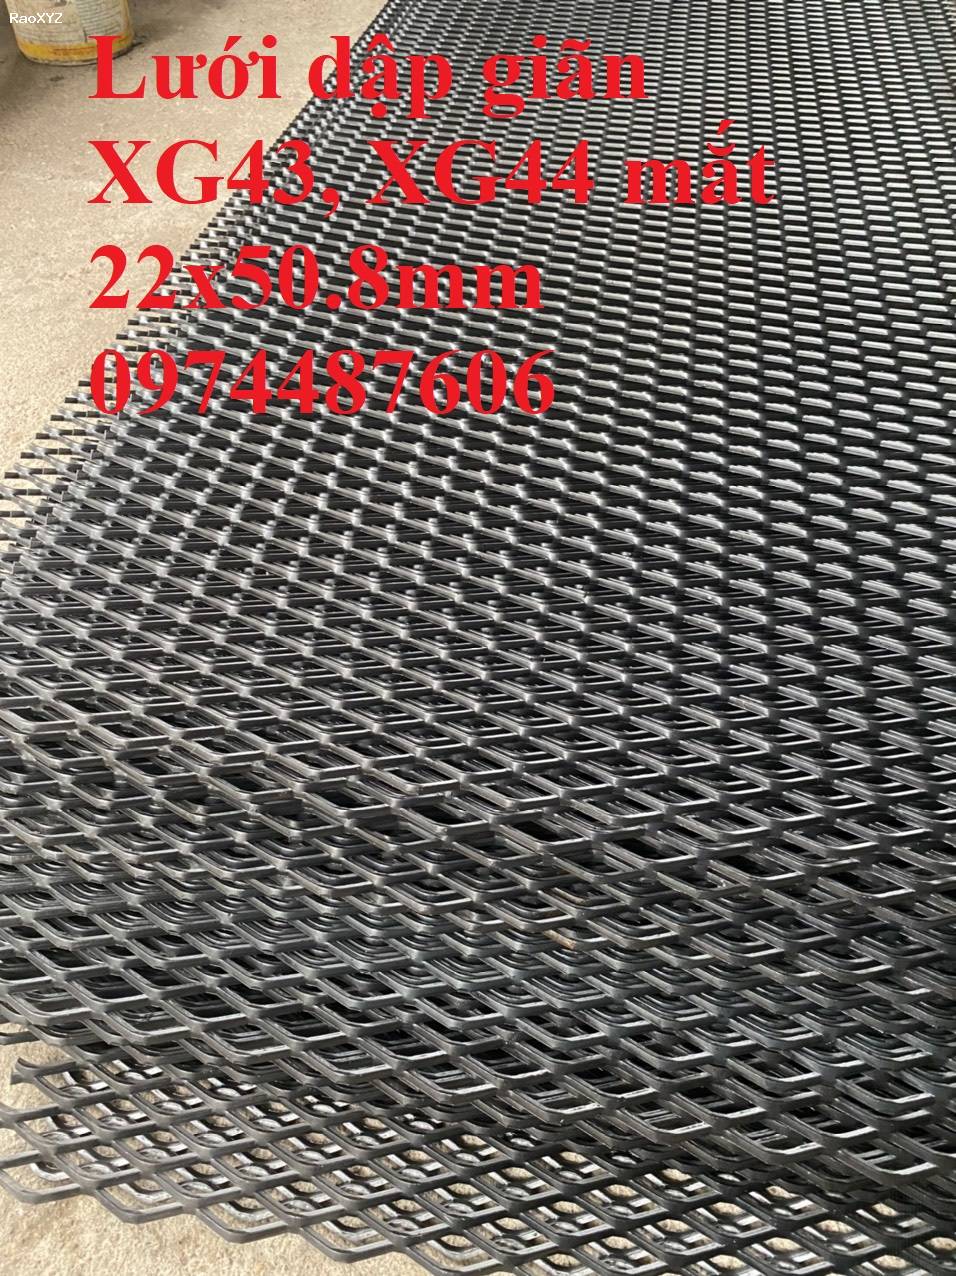 Lưới mắt cáo, lưới trám, lưới dập giãn XG43, XG44 mắt lưới 22x50.8mm dày 3mm, 4mm. Nhận sản xuất theo kích thước yêu cầu